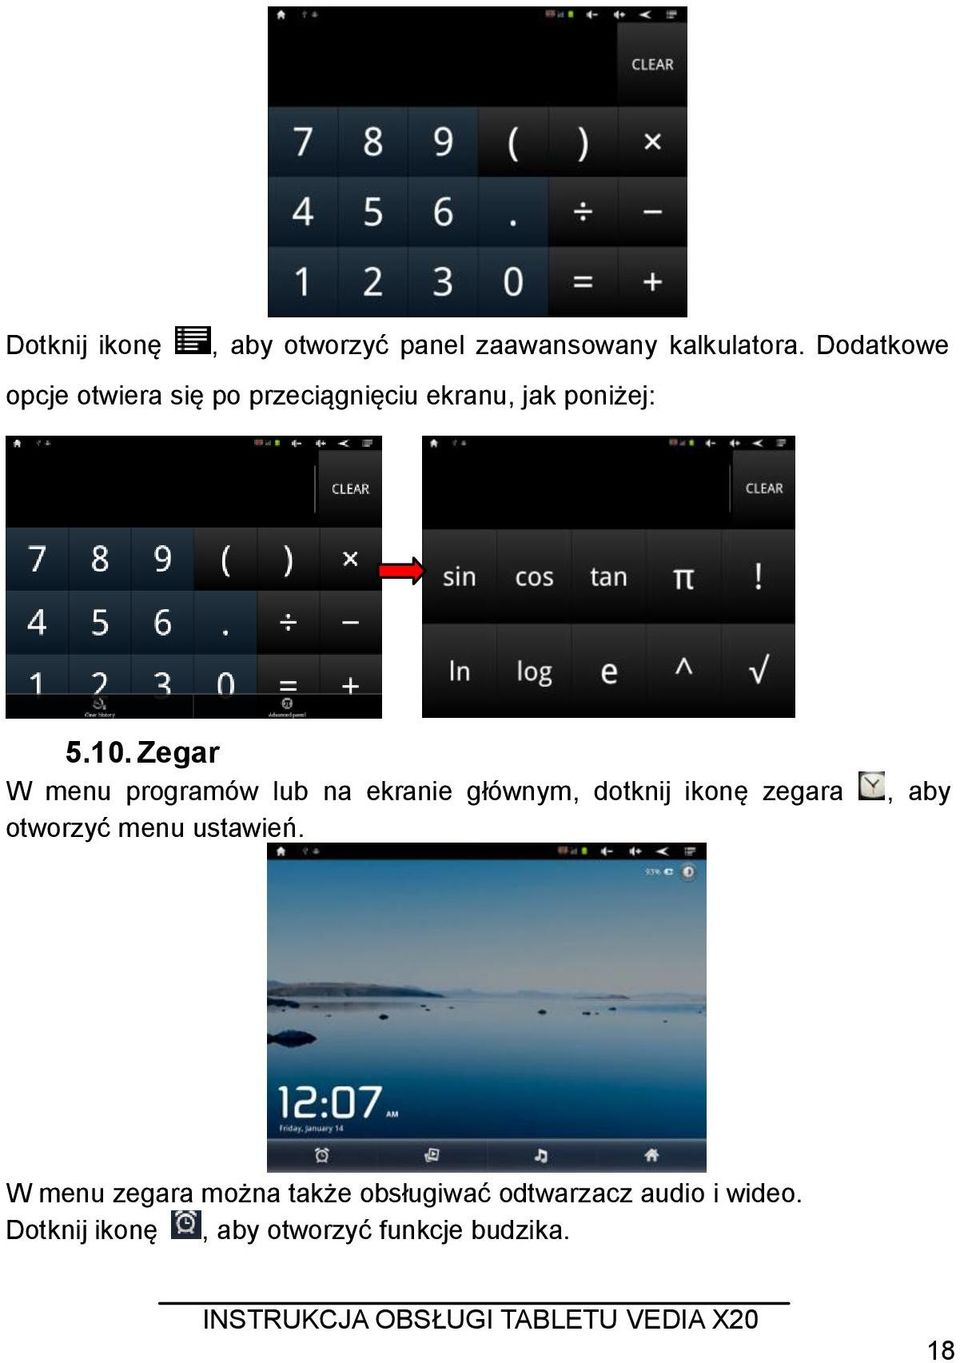 Zegar W menu programów lub na ekranie głównym, dotknij ikonę zegara otworzyć menu